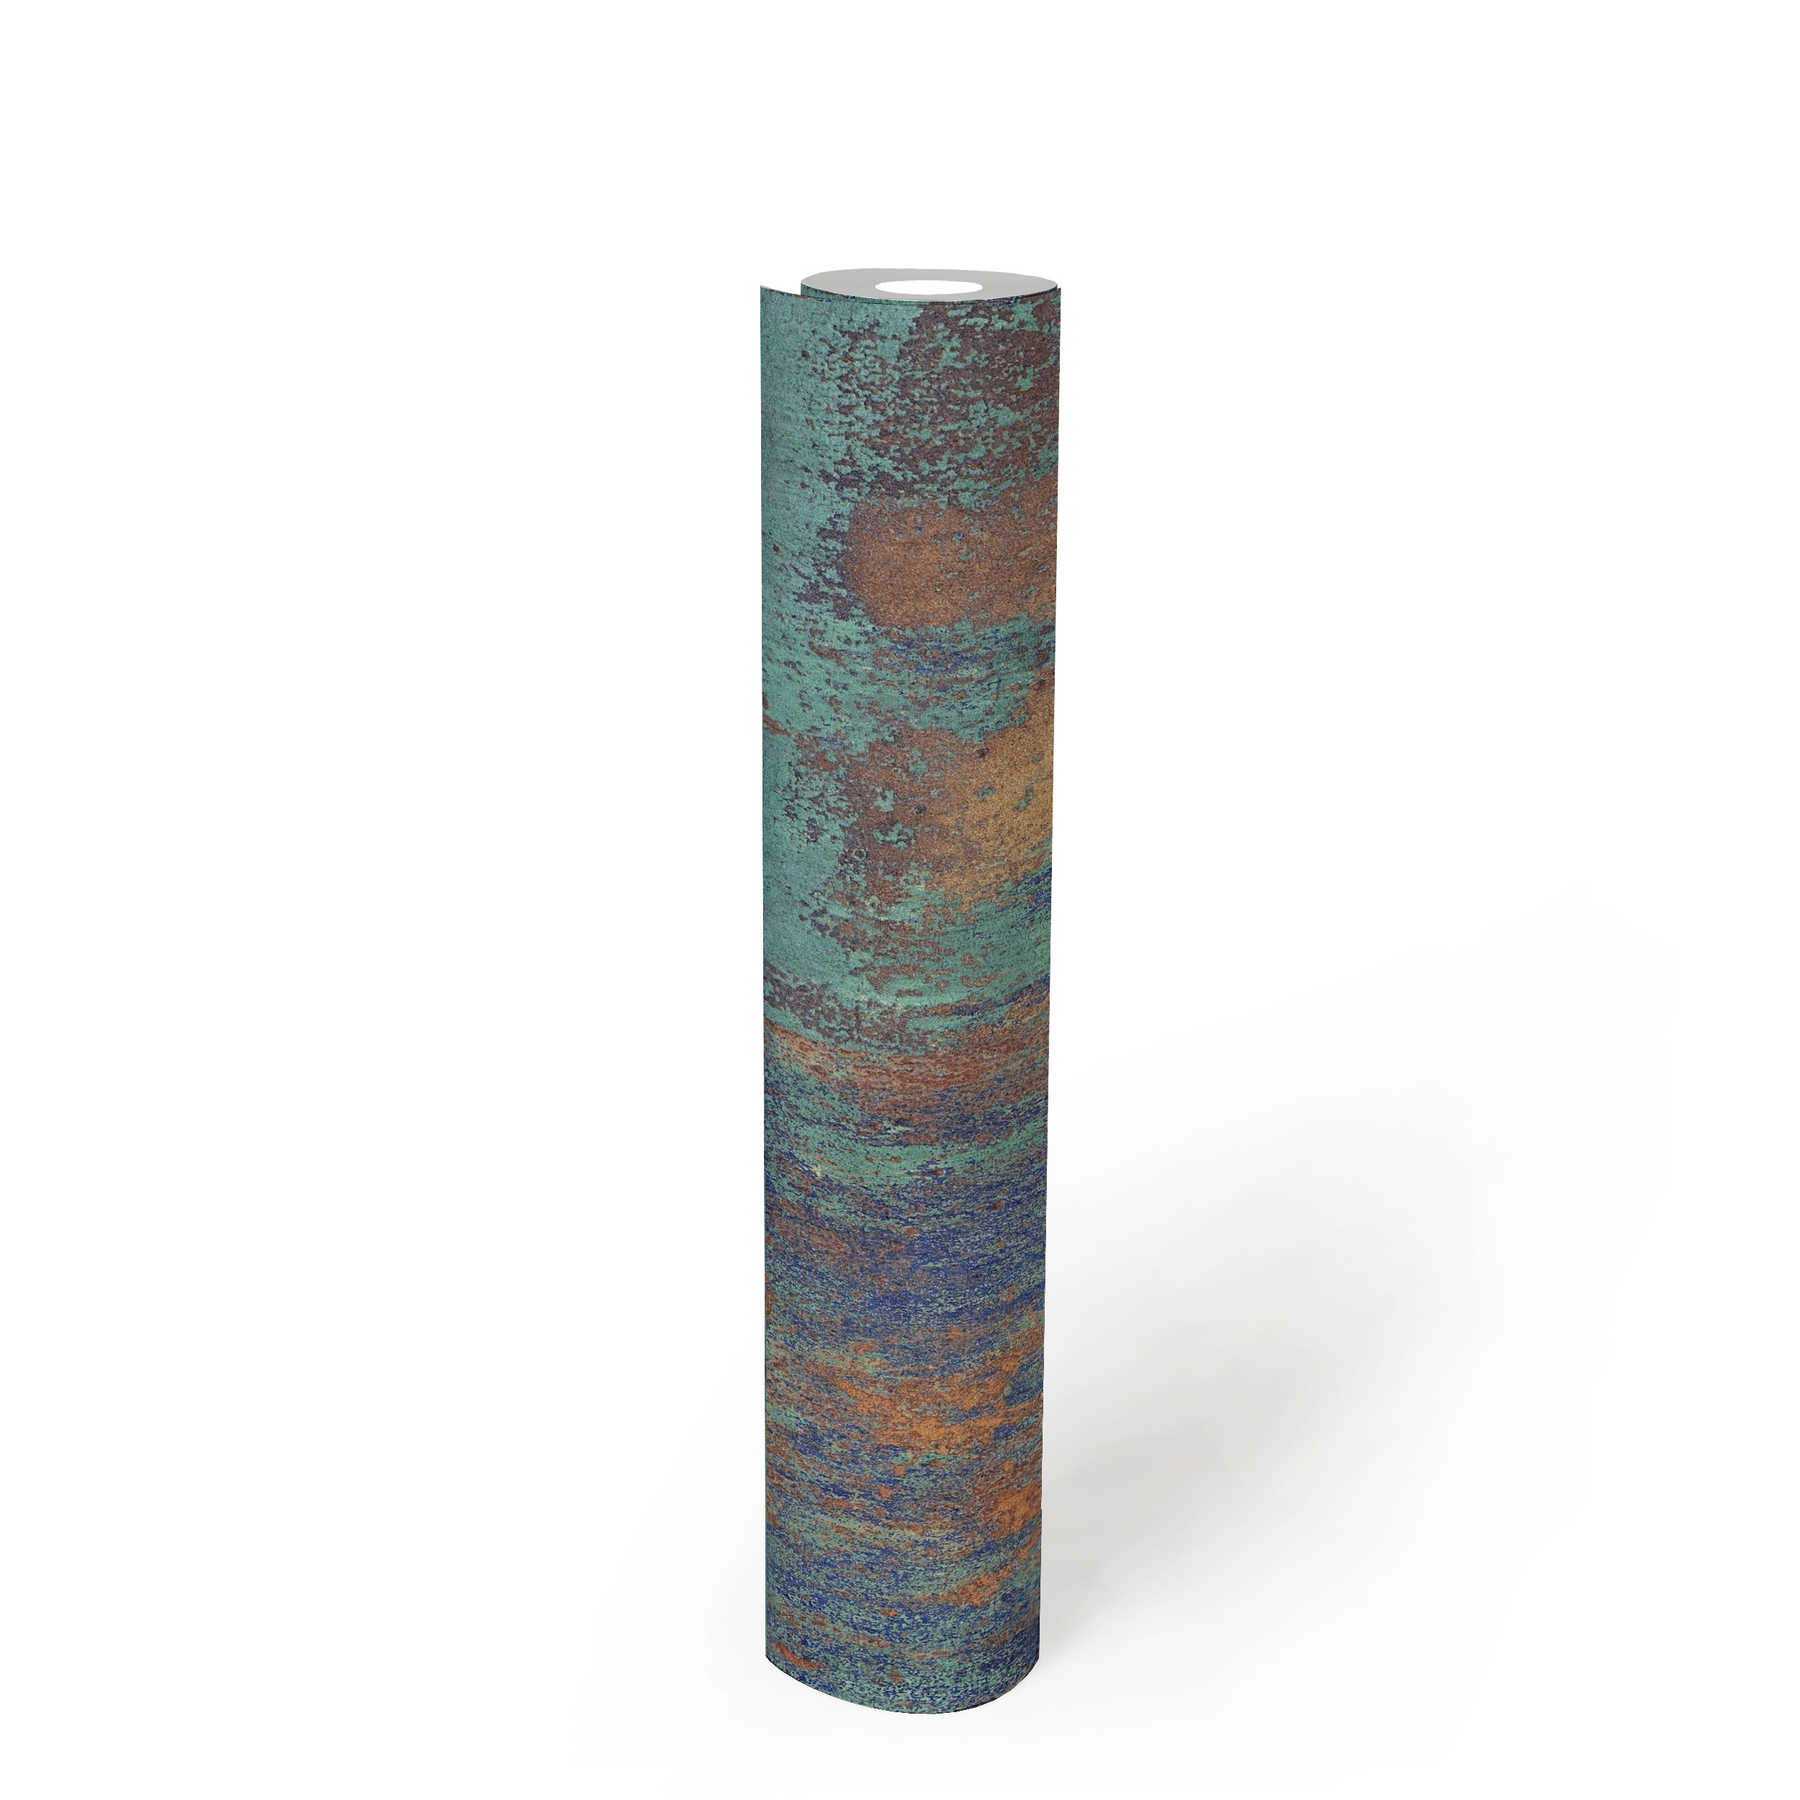             Patinagedessin van vliesbehang met roest- en kopereffecten - blauw, bruin, koper
        